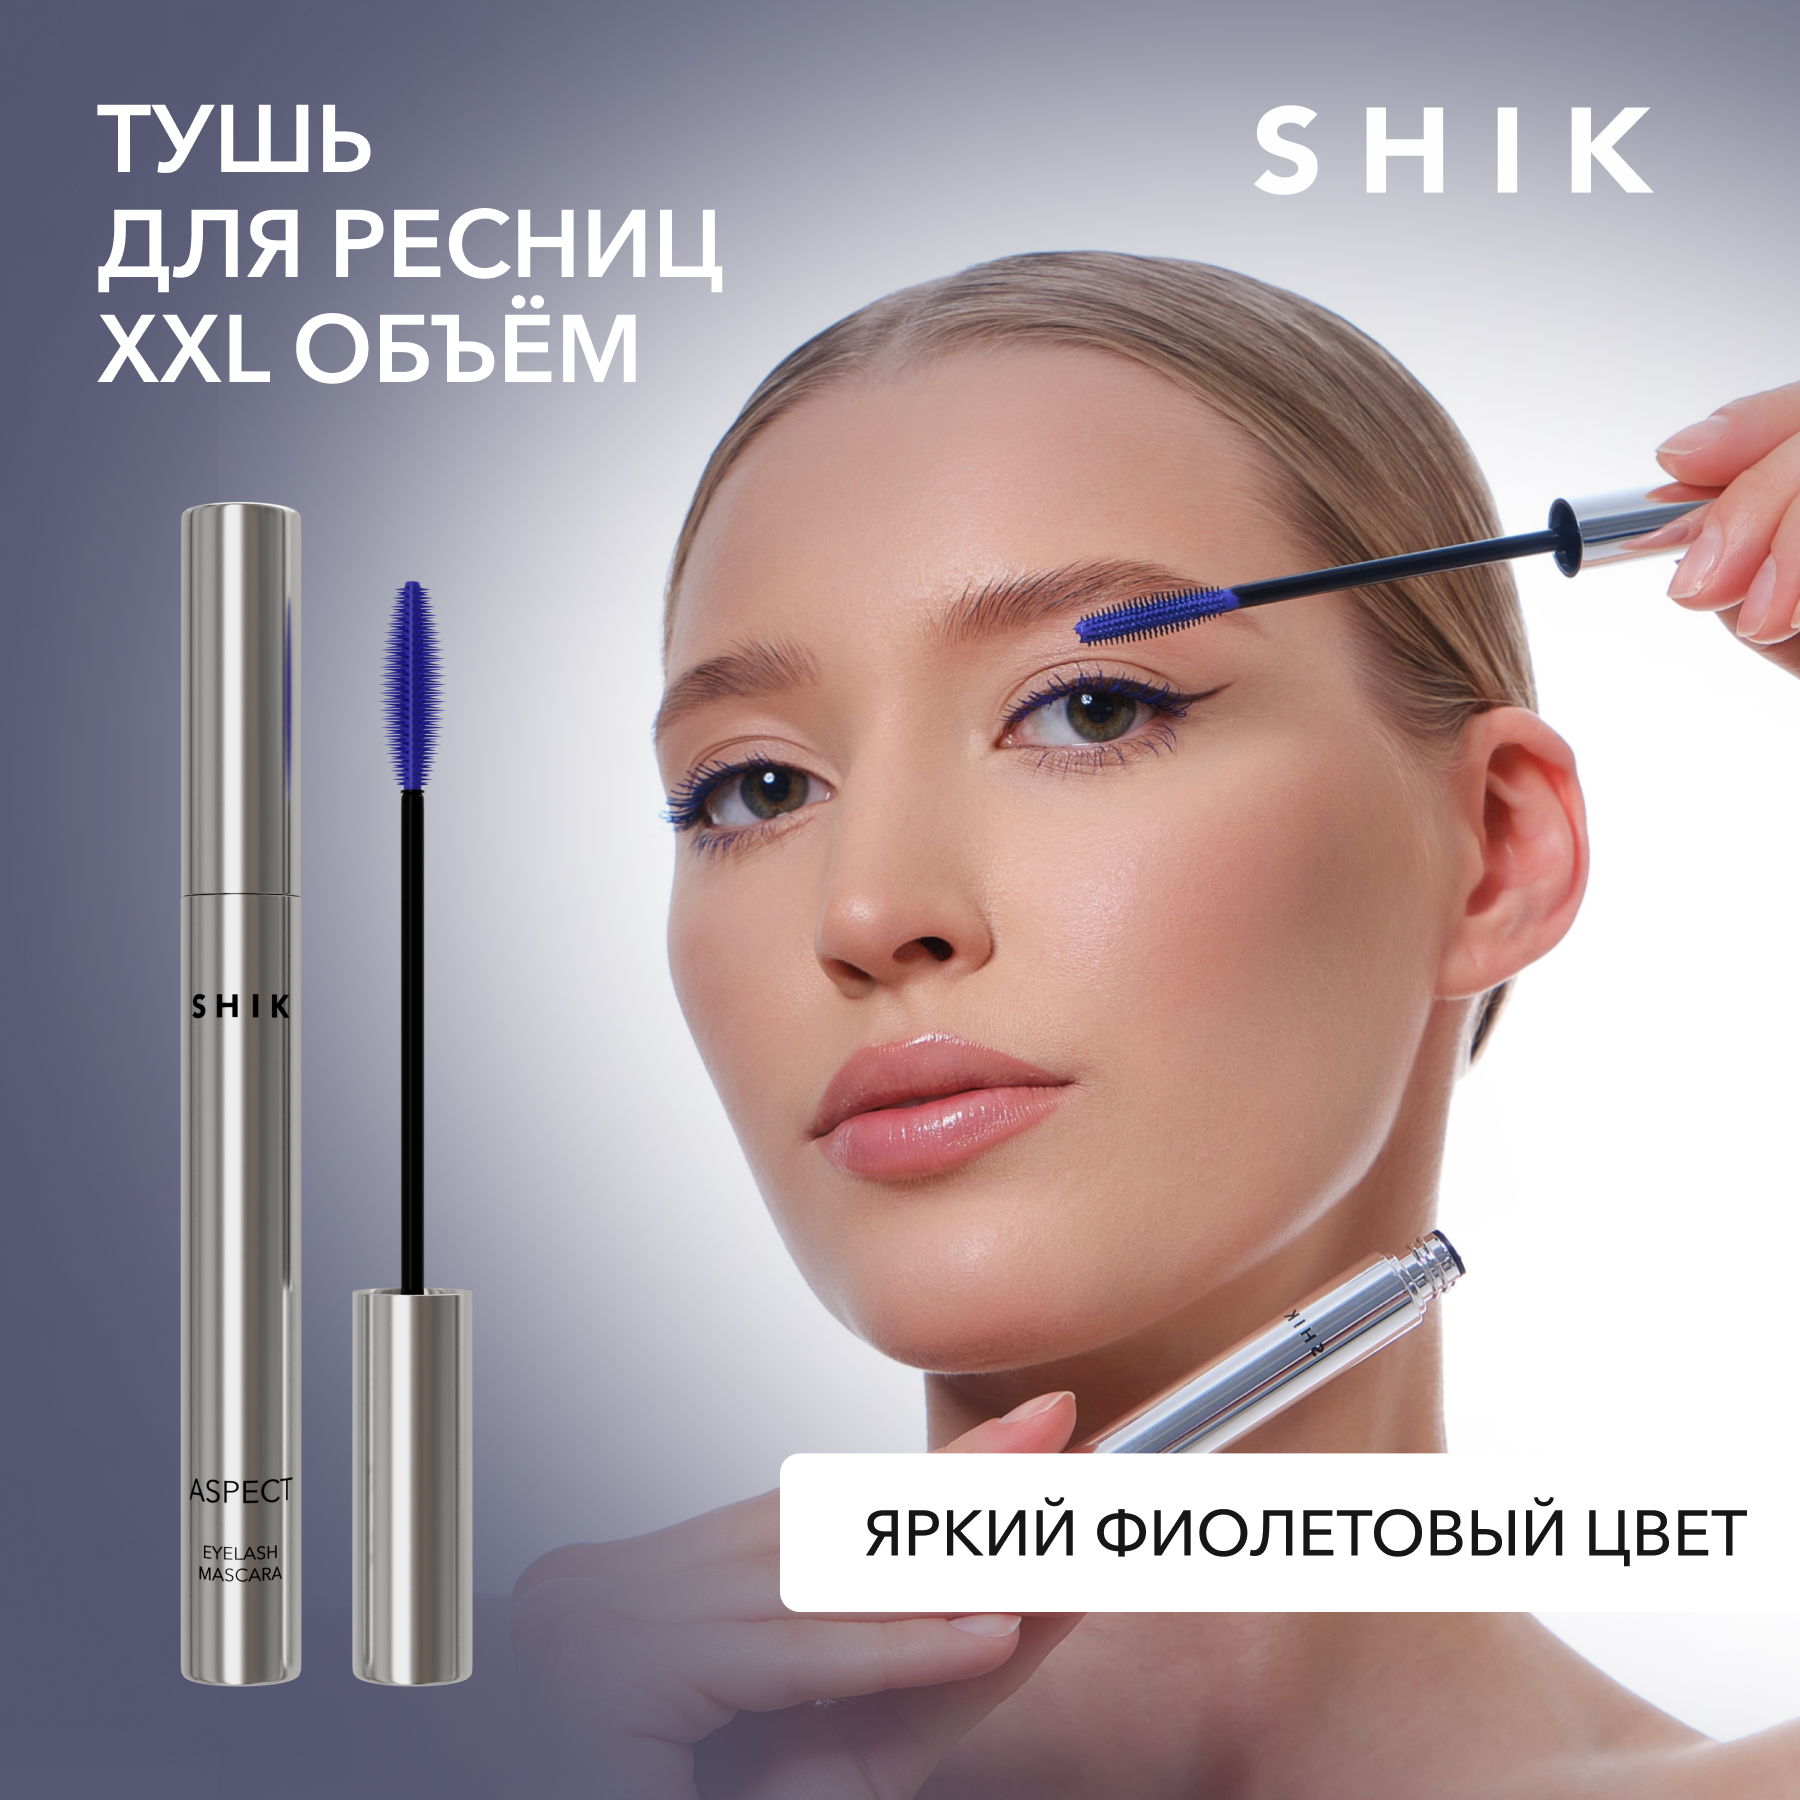 Тушь для ресниц цветная фиолетовая удлиняющая SHIK aspect violet eyelash mascara